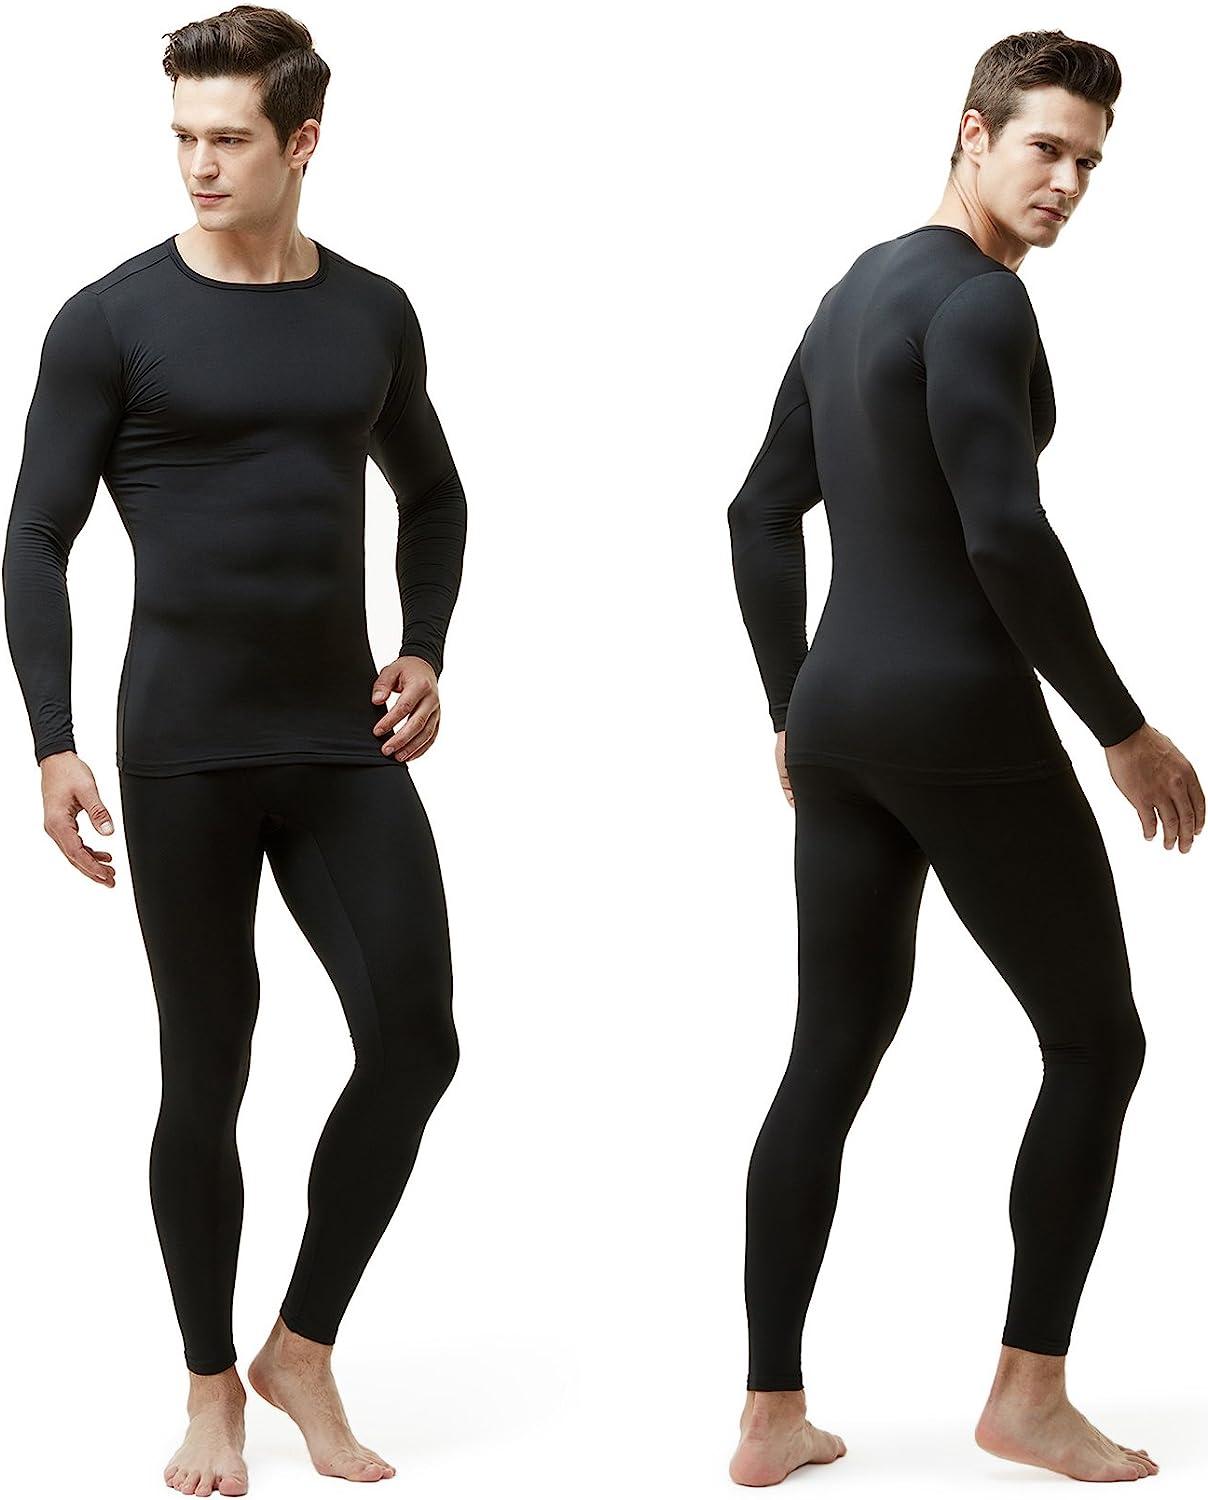 Men's thermoactive fleece underwear (top) - black